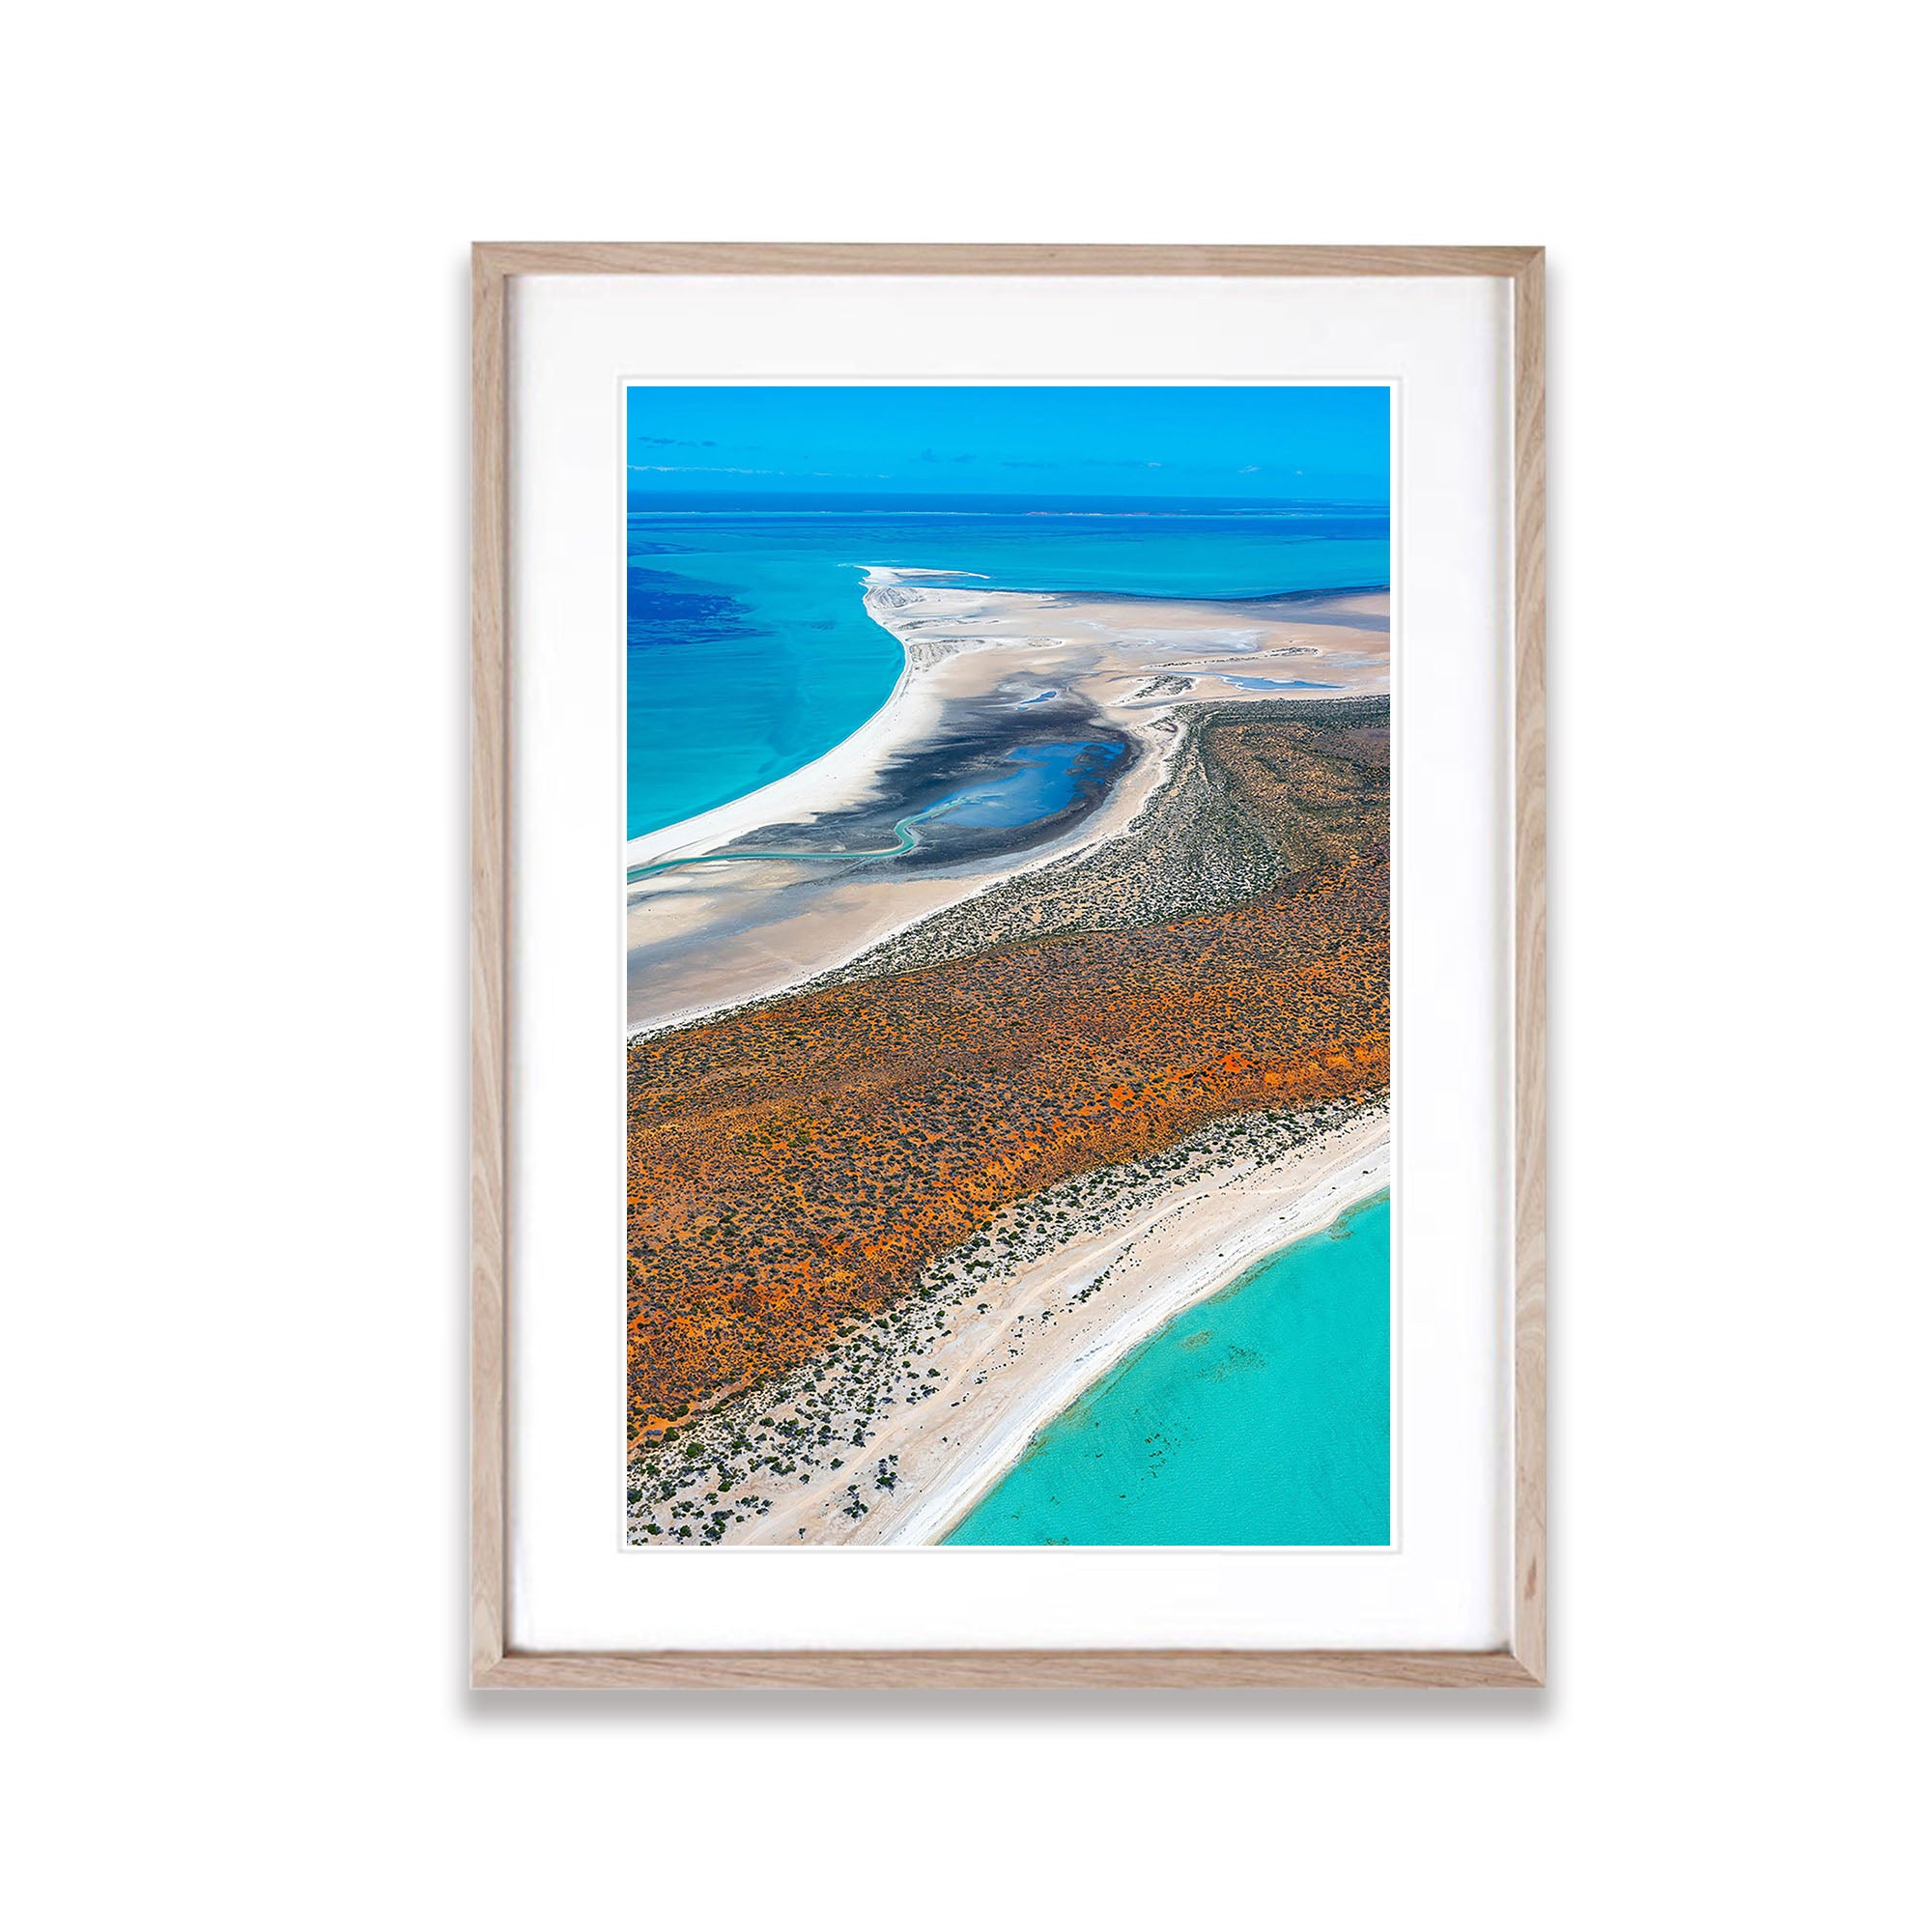 Shark Bay Coastline, WA Aerial